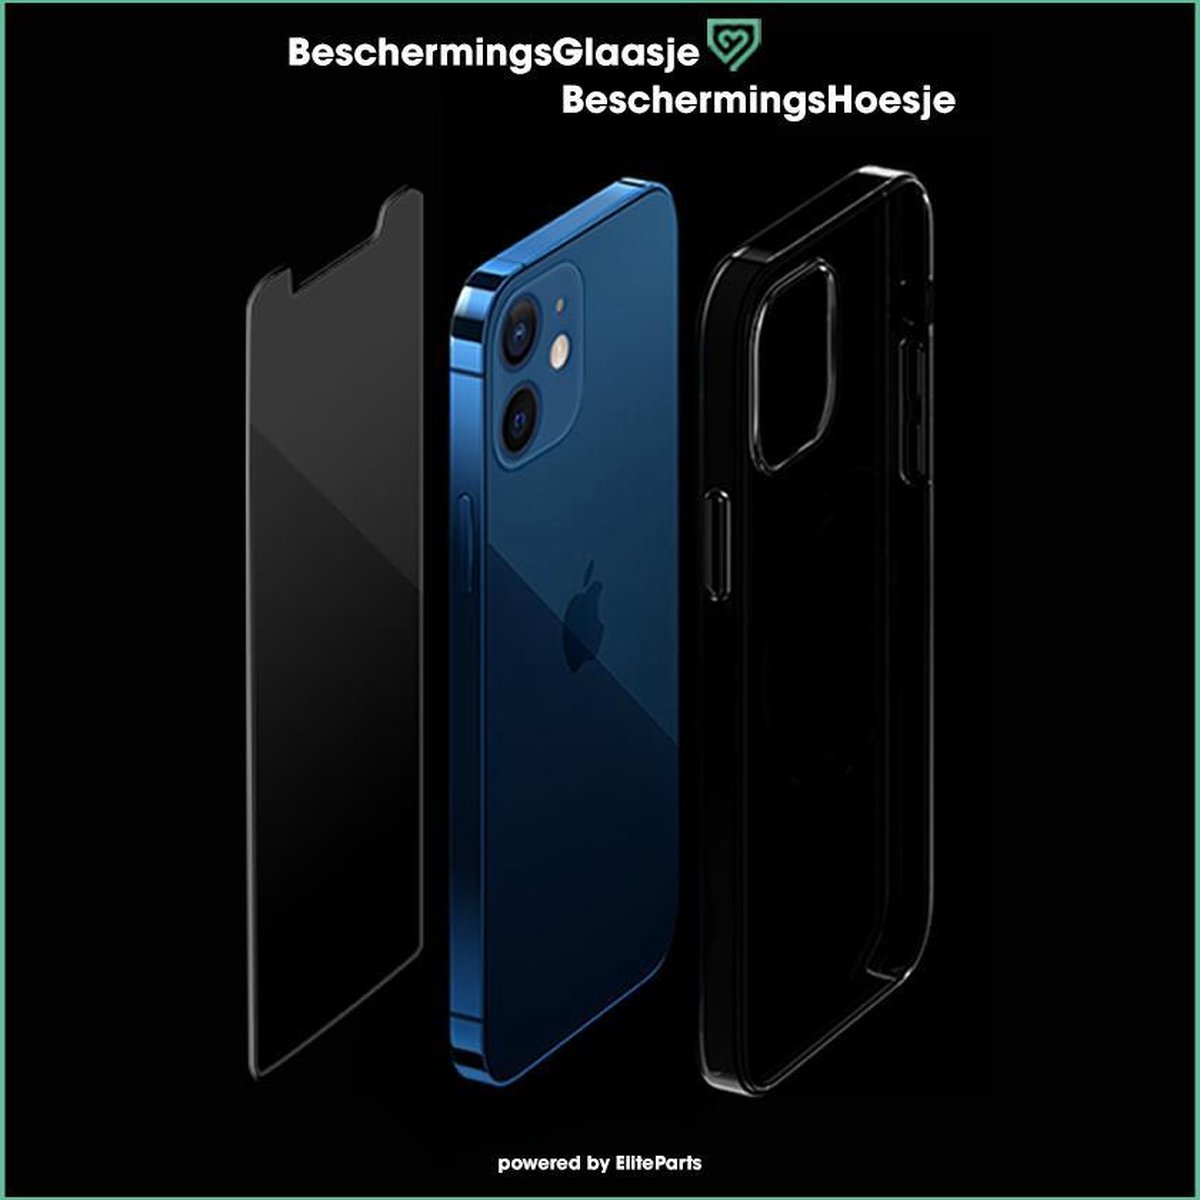 iPhone 12 mini combo deal BeschermingsHoesje x BeschermingsGlaasje| 5,4 inch| Elite Parts NL